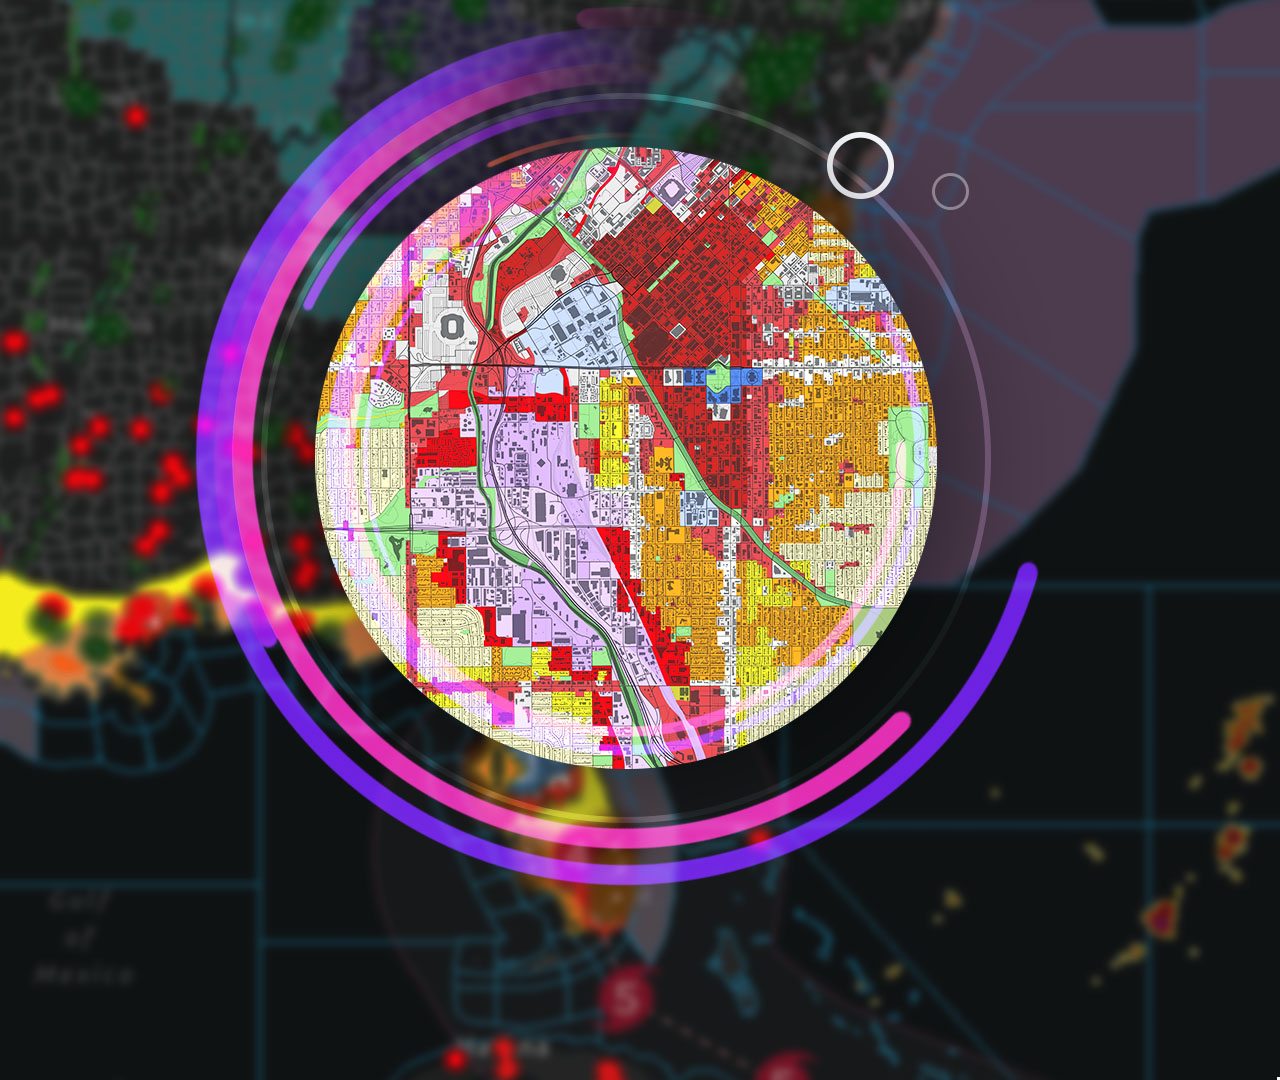 Imagen de un ordenador que muestra un mapa de datos espaciales, rodeado de imágenes de altos edificios urbanos